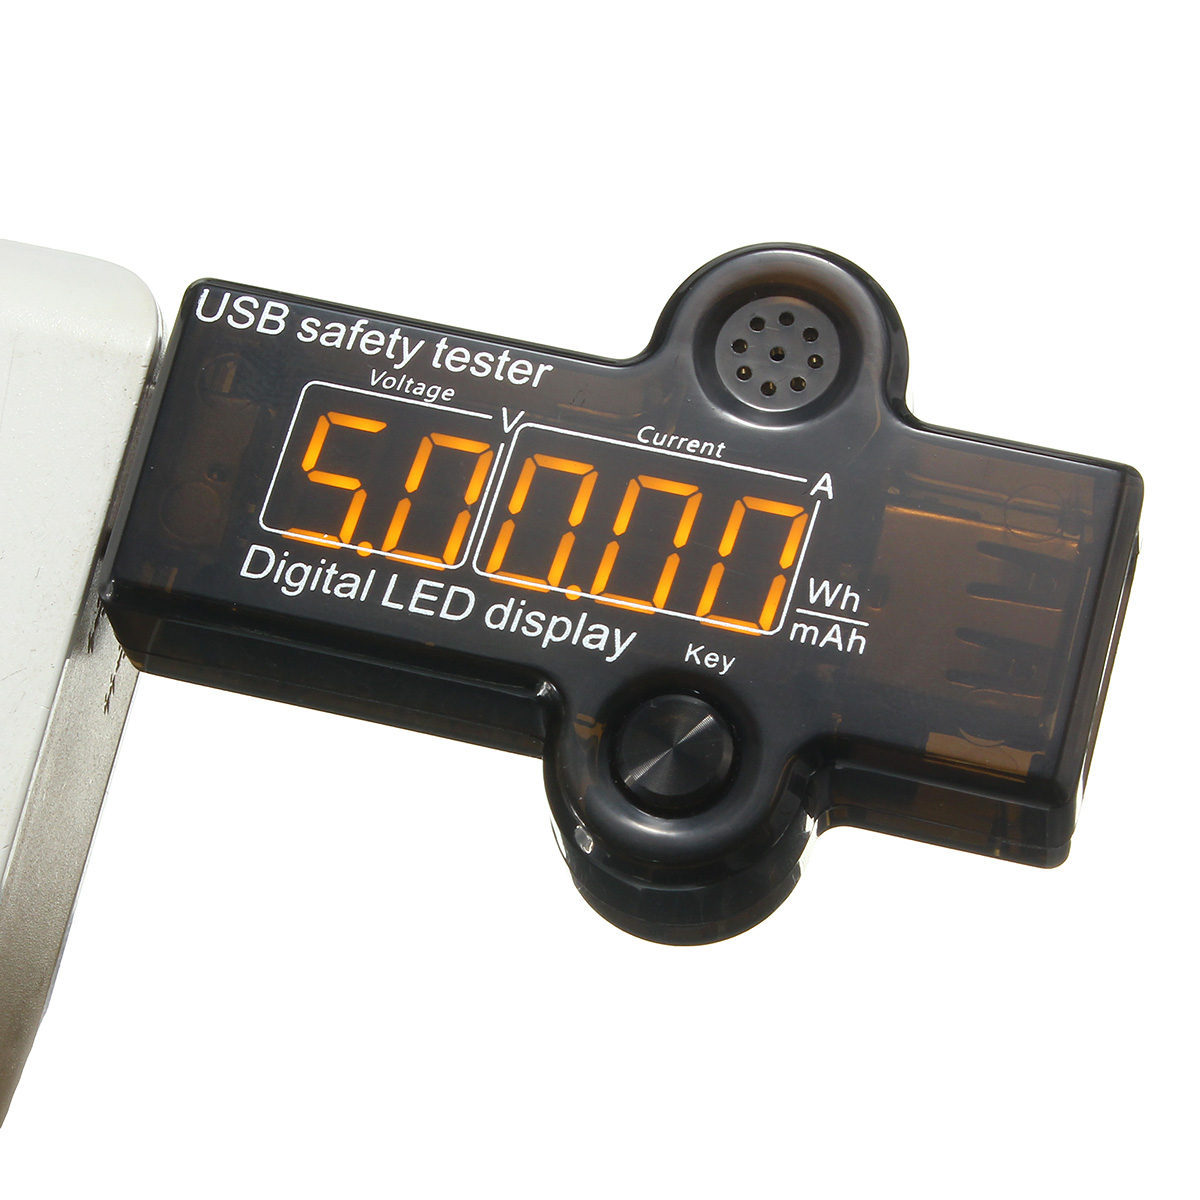 

Многофункциональный USB 4.5-7.4v безопасности тестер детектор тока тестер напряжения индикатор батареи